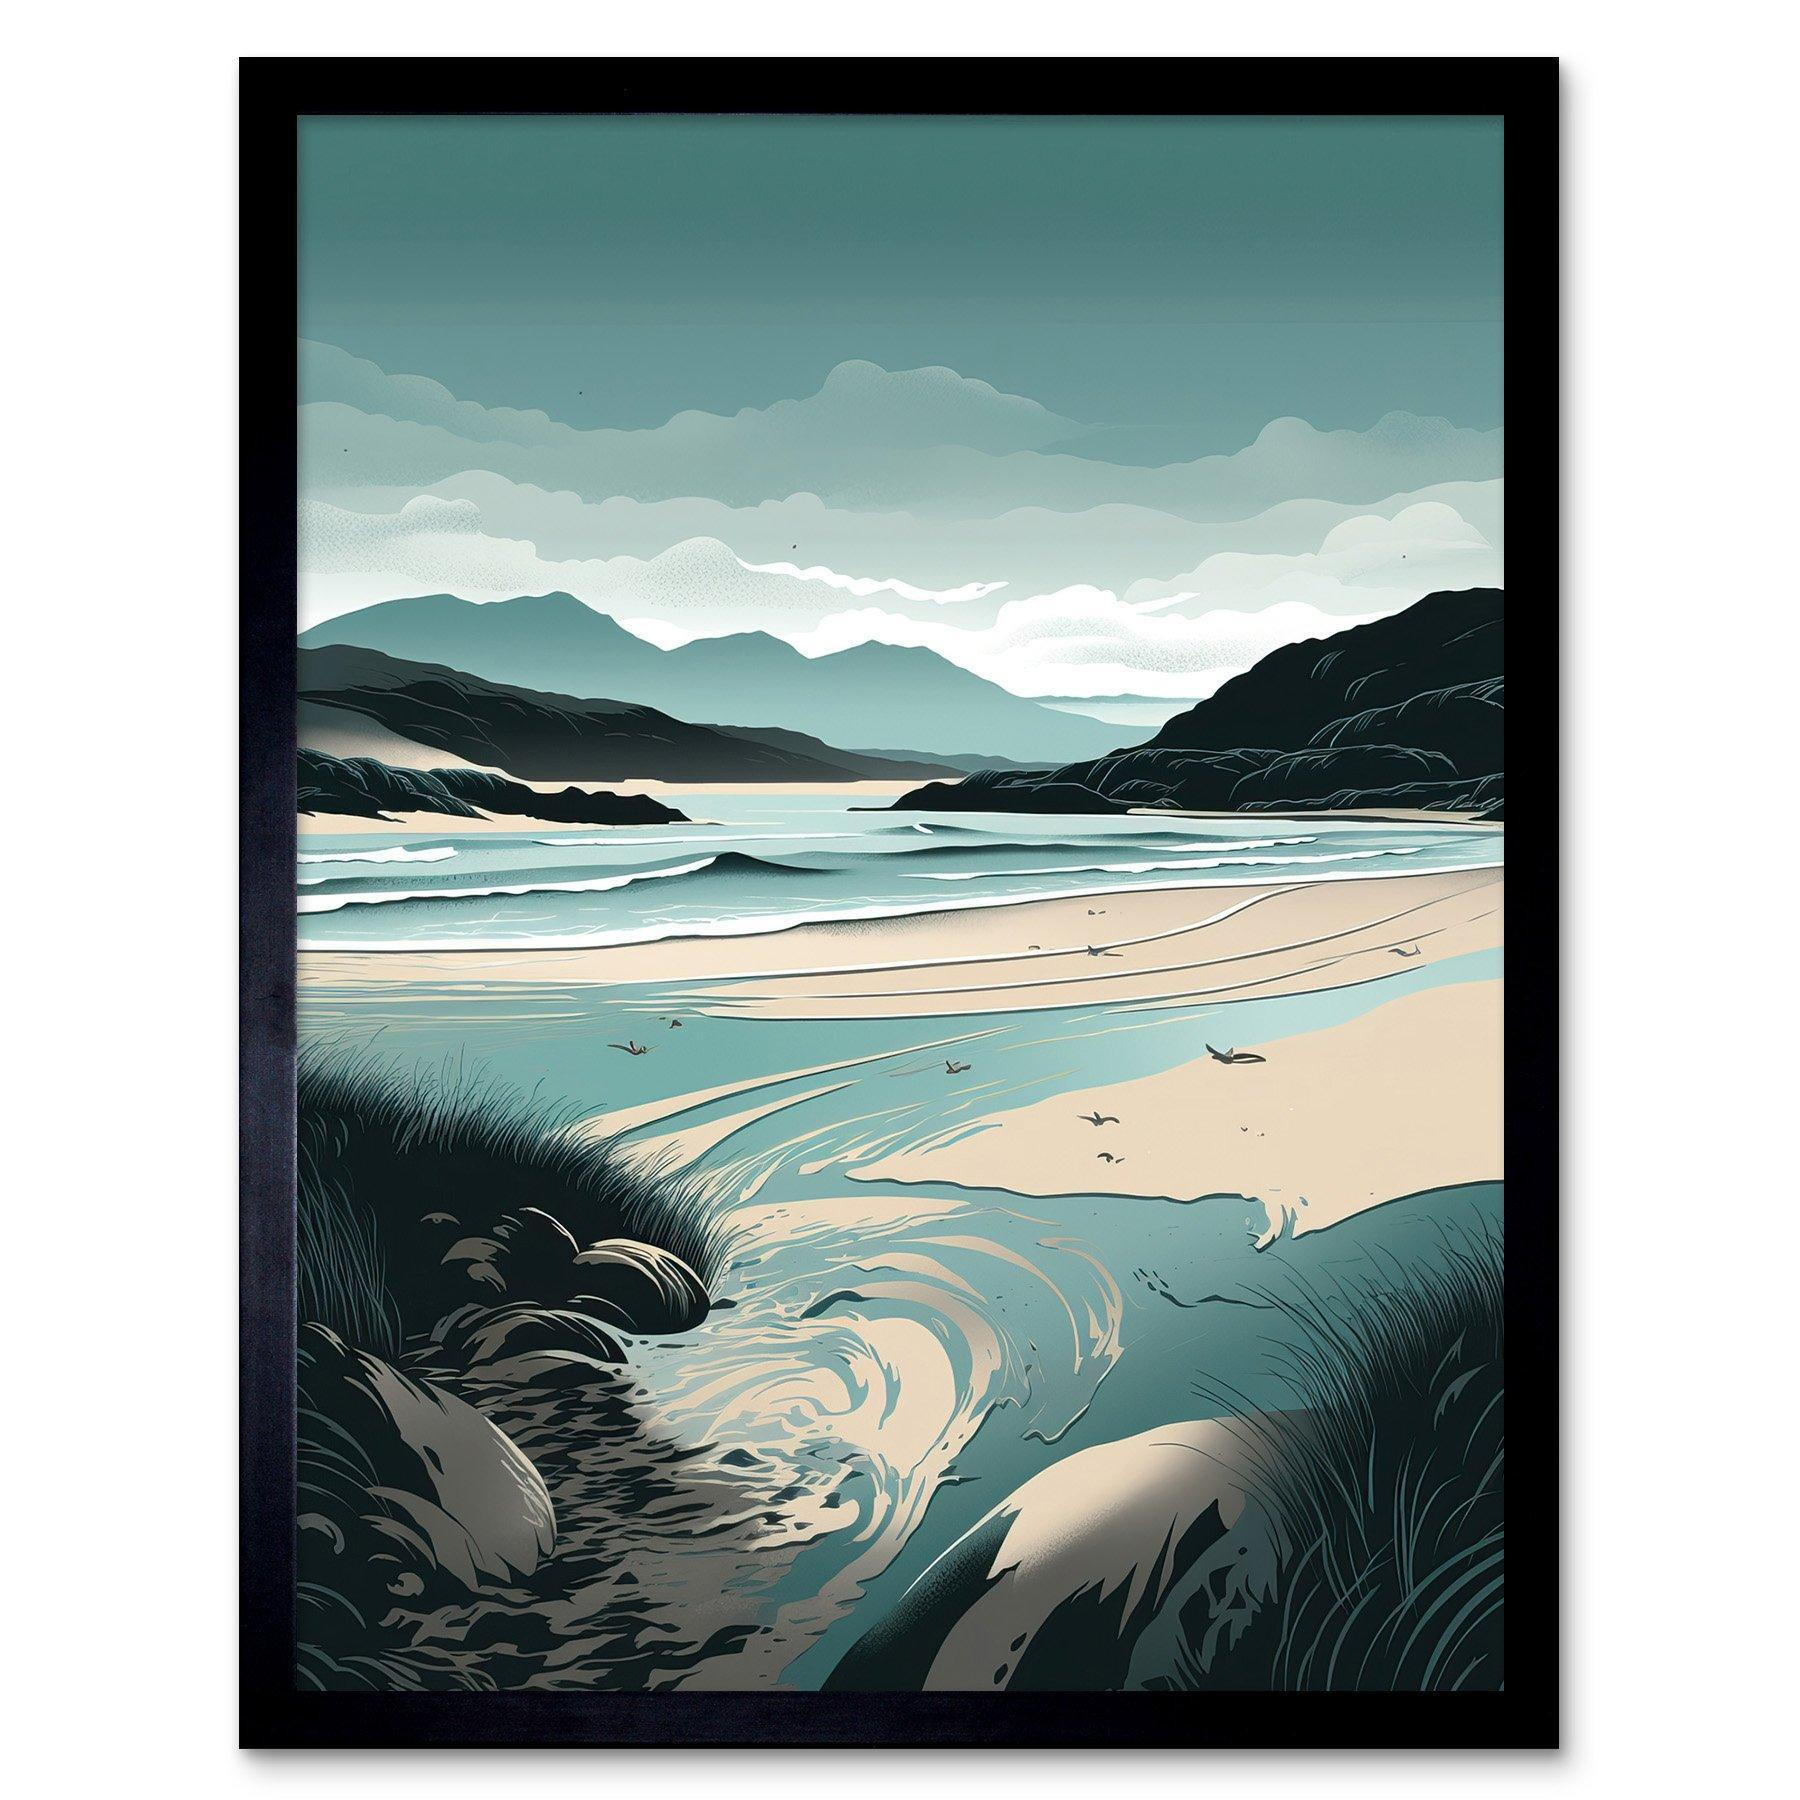 Luskentyre Sands Coastal Landscape Illustration Art Print Framed Poster Wall Decor 12x16 inch - image 1